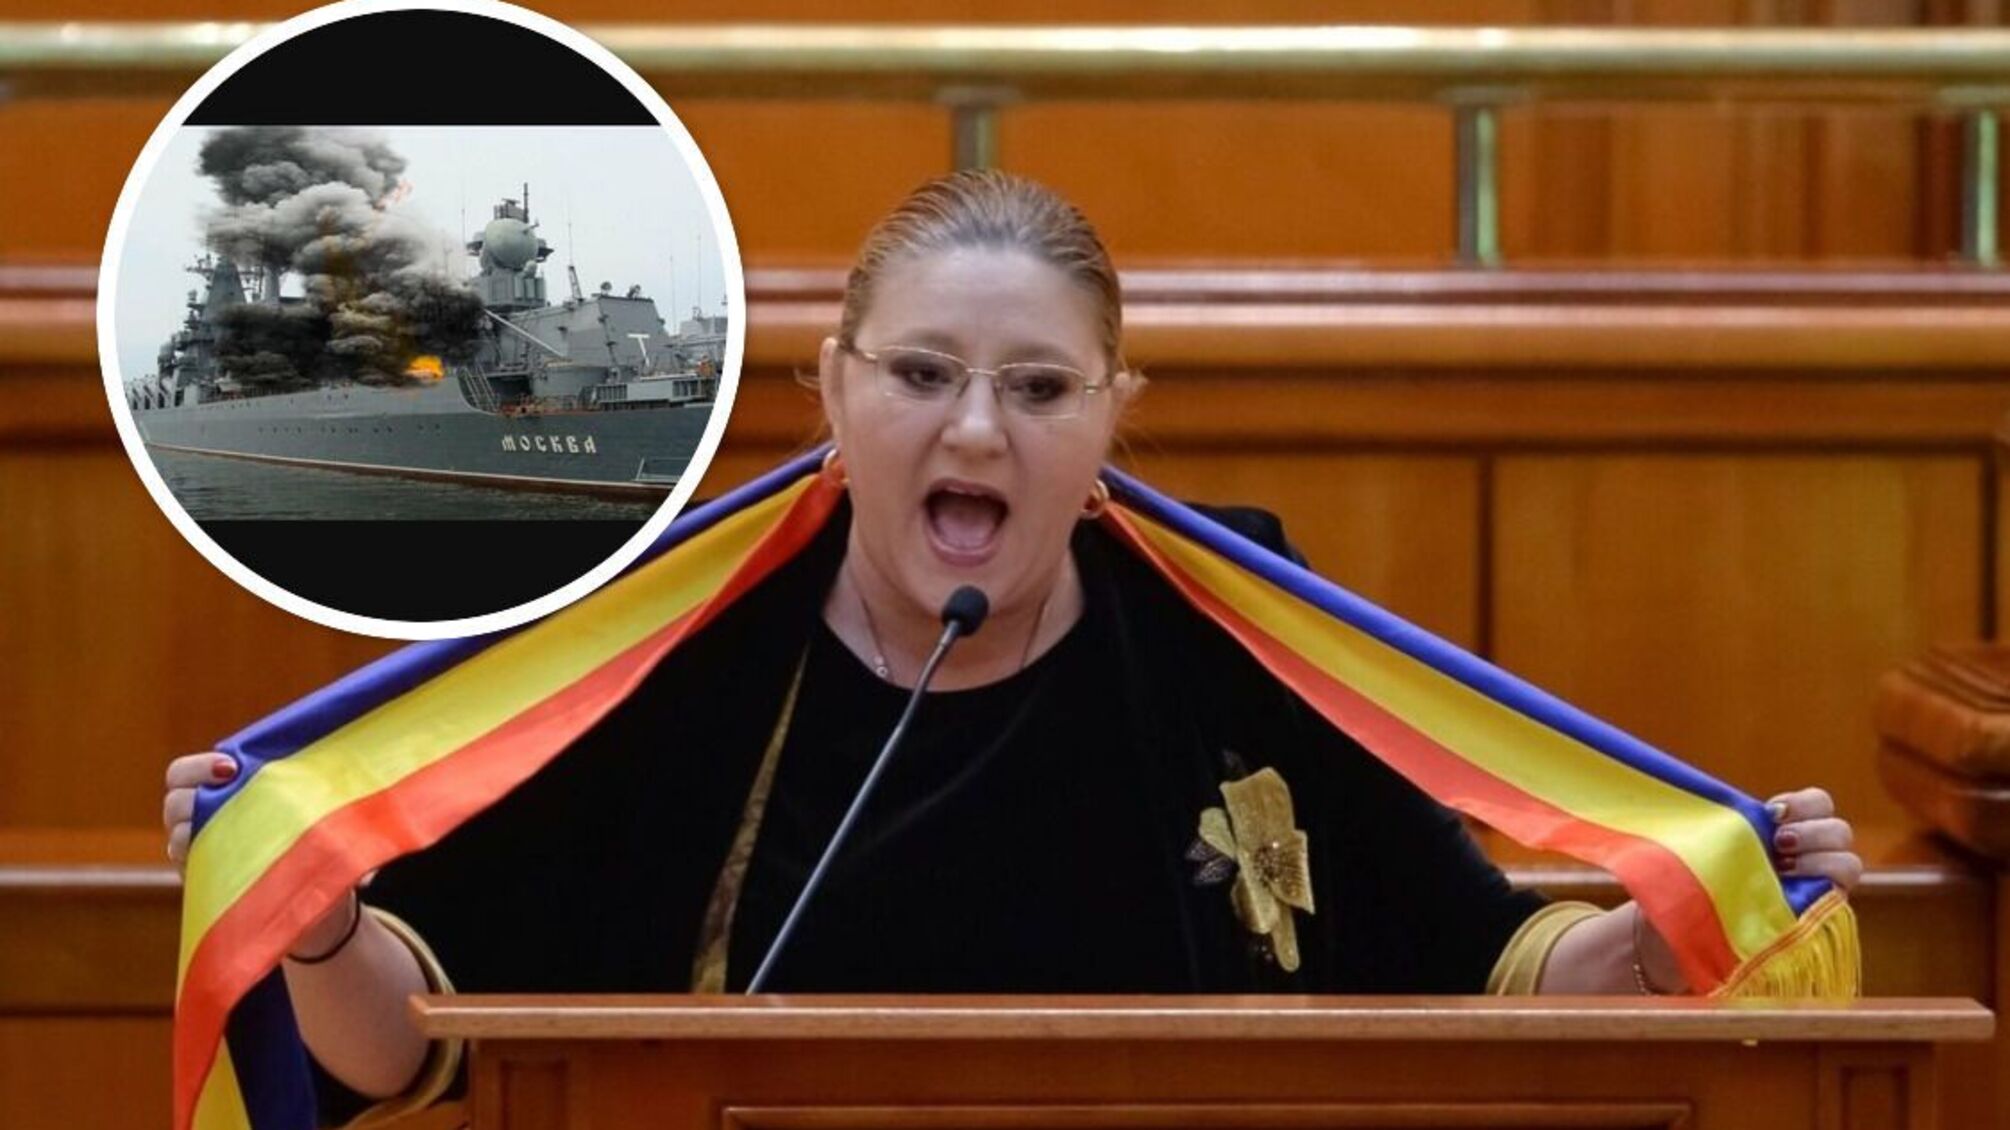 Депутатка из Румынии Диана Шошоаке 'шокировала' сенат: воскликнула 'Слава Москве' с трибуны - видео